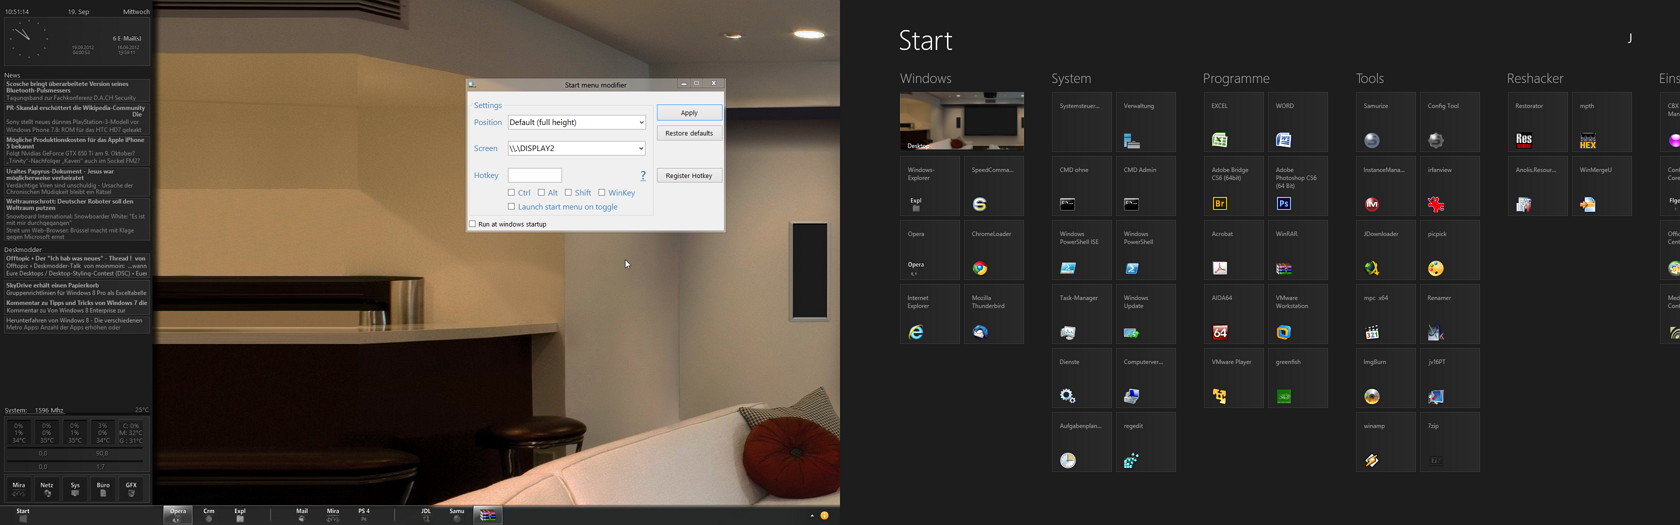 Das Metro Startmenü -Startscreen- immer auf dem zweiten Desktop starten Windows 8